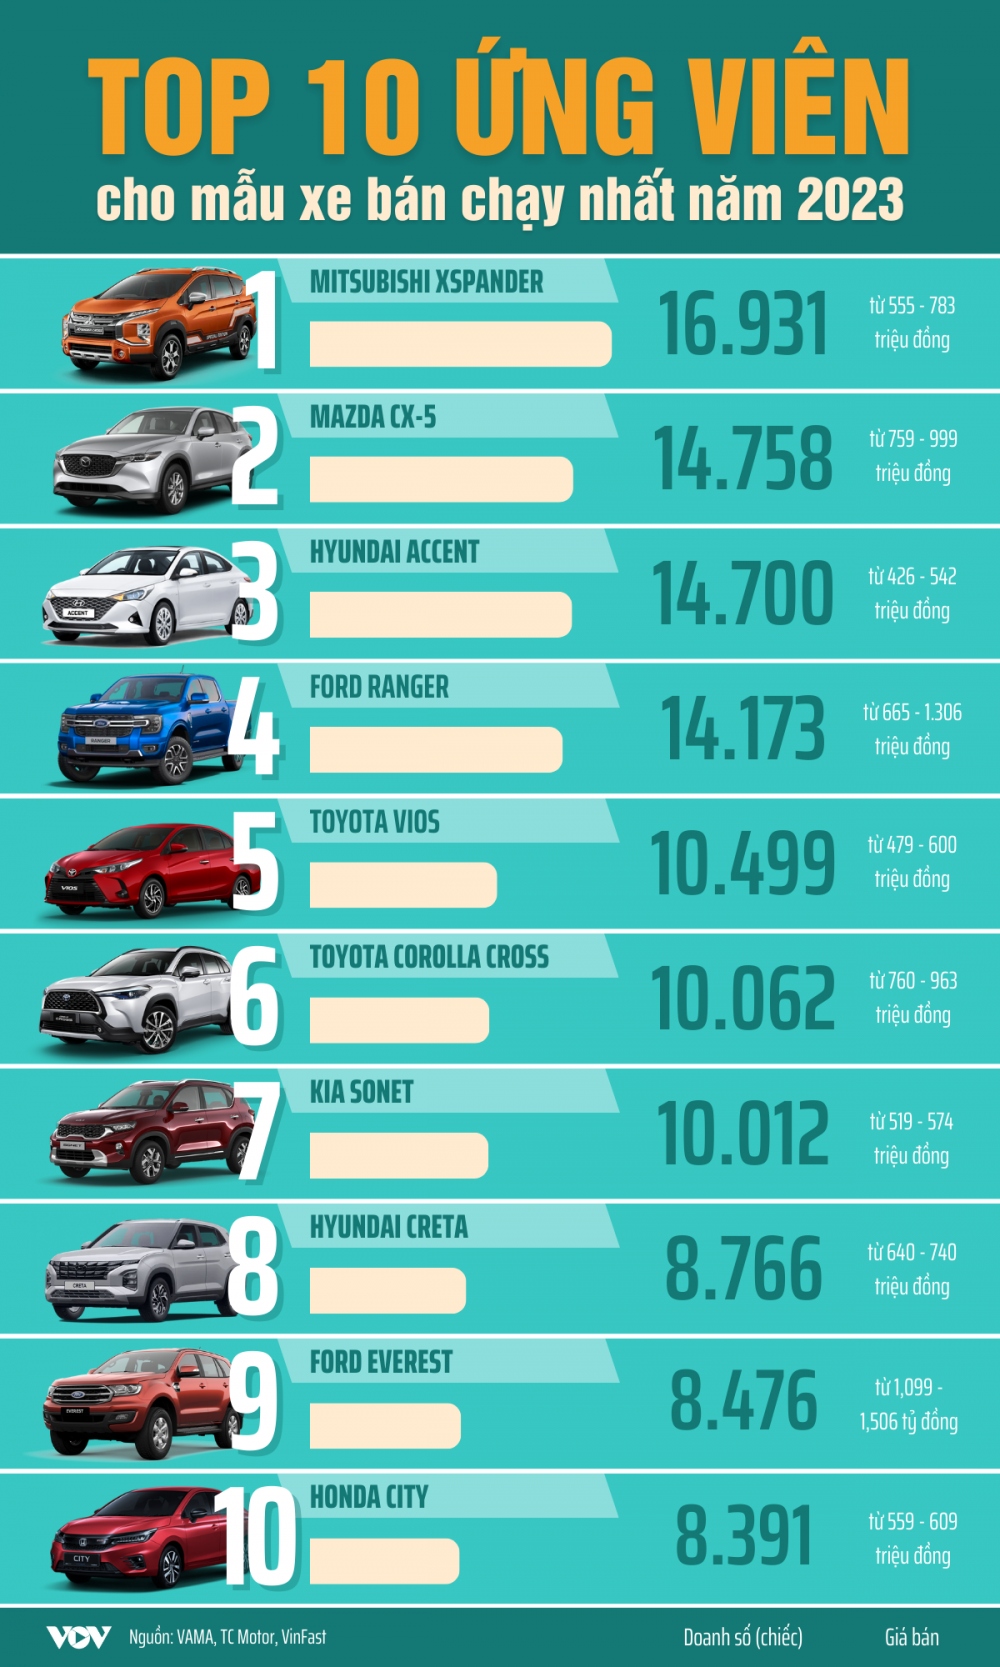 Những mẫu xe sáng giá cho Top 10 xe bán chạy nhất năm 2023 - Ảnh 1.